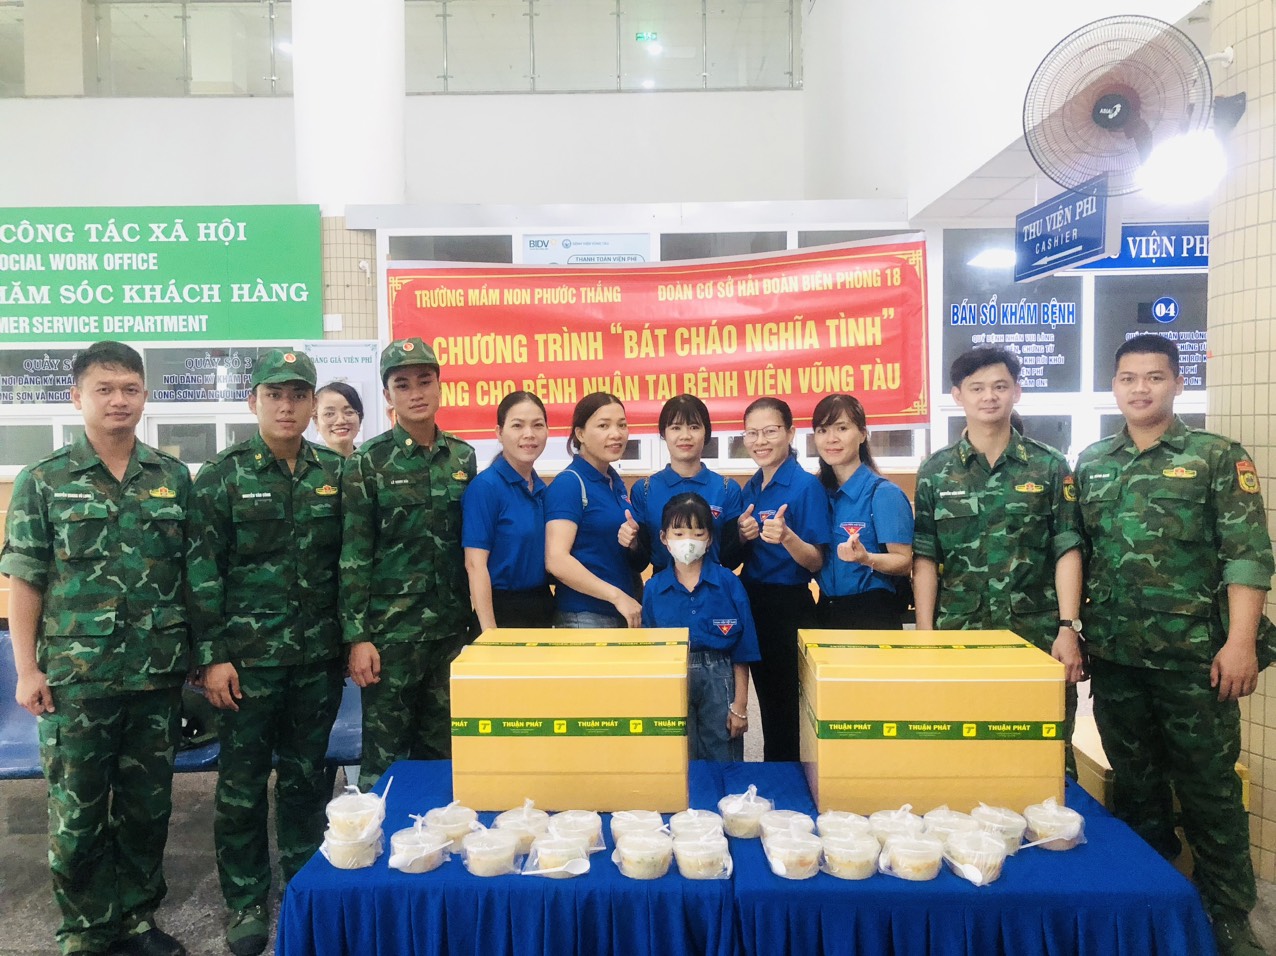 Chương trình do Trường MN Phước Thắng phôi shợp với Đoàn cơ sở Hải đoàn Biên phòng 18 thực hiện.